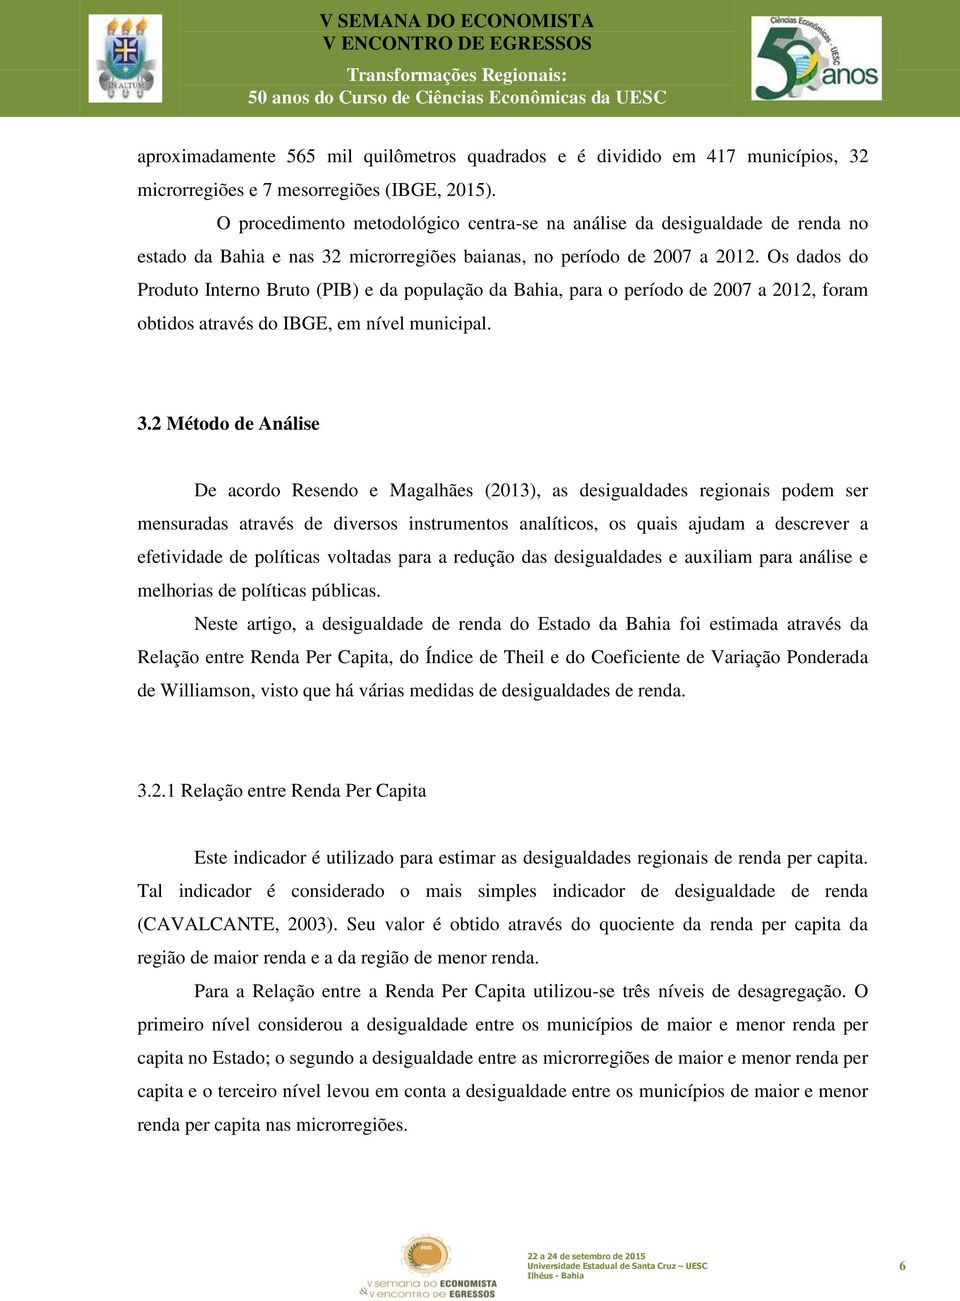 Os dados do Produto Interno Bruto (PIB) e da população da Bahia, para o período de 2007 a 2012, foram obtidos através do IBGE, em nível municipal. 3.